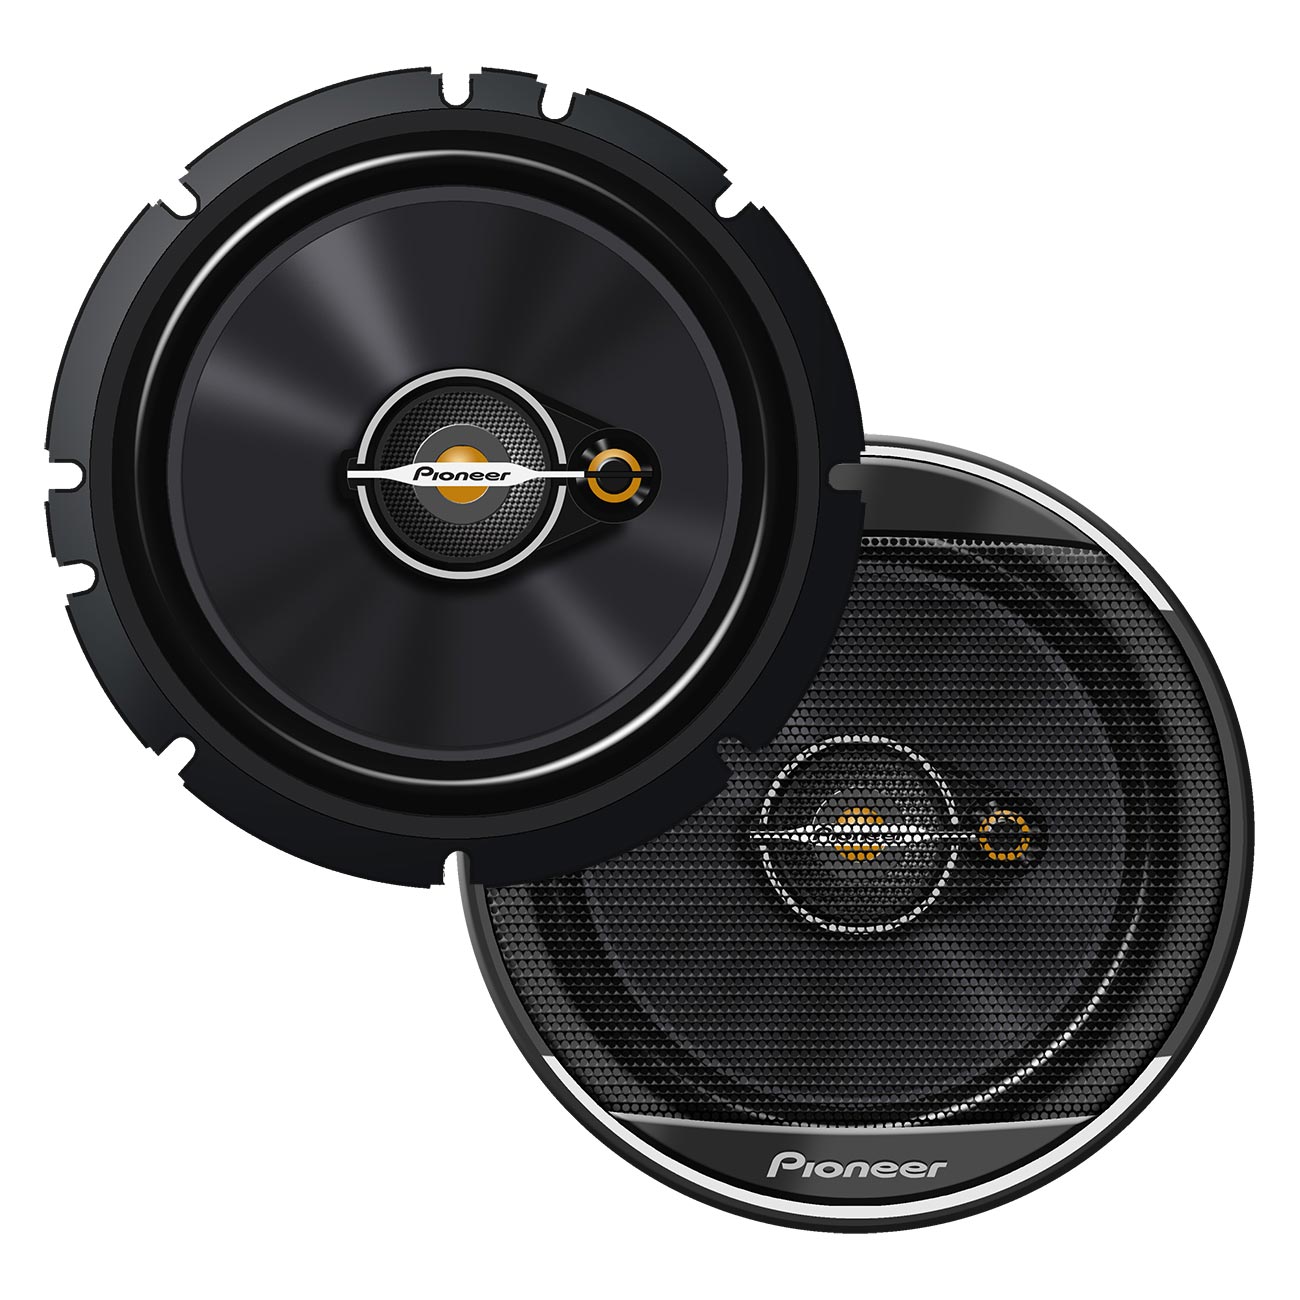 Pioneer 6-1/2" 3-Way Full Range Speakers - 320 Watts Max / 70 RMS (Pair)